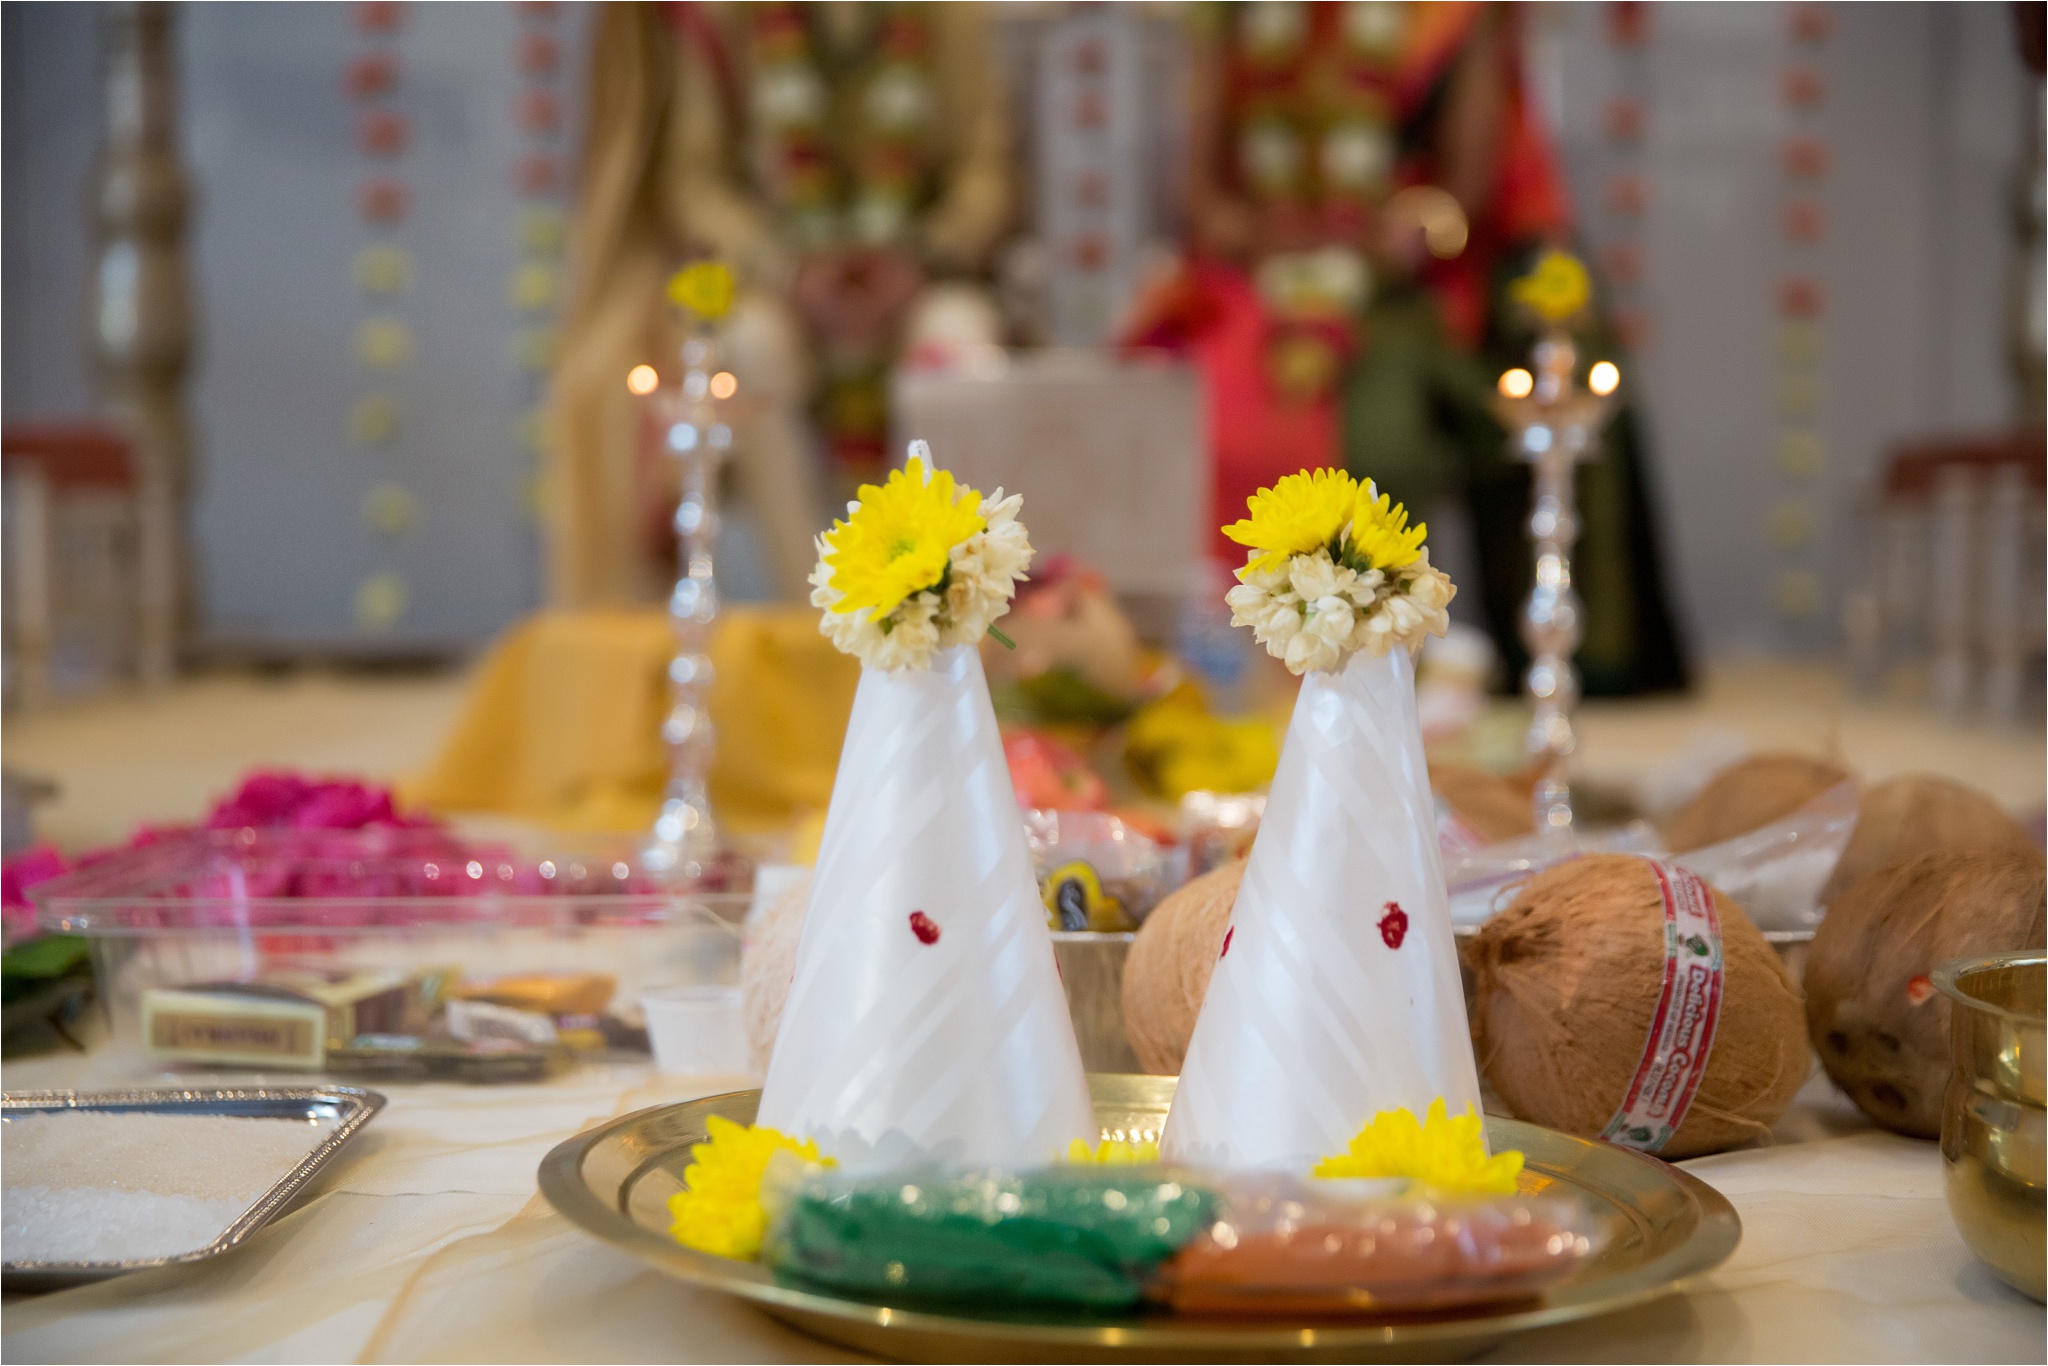 Santa_Clara_Marriott_Indian_Wedding_0028.jpg